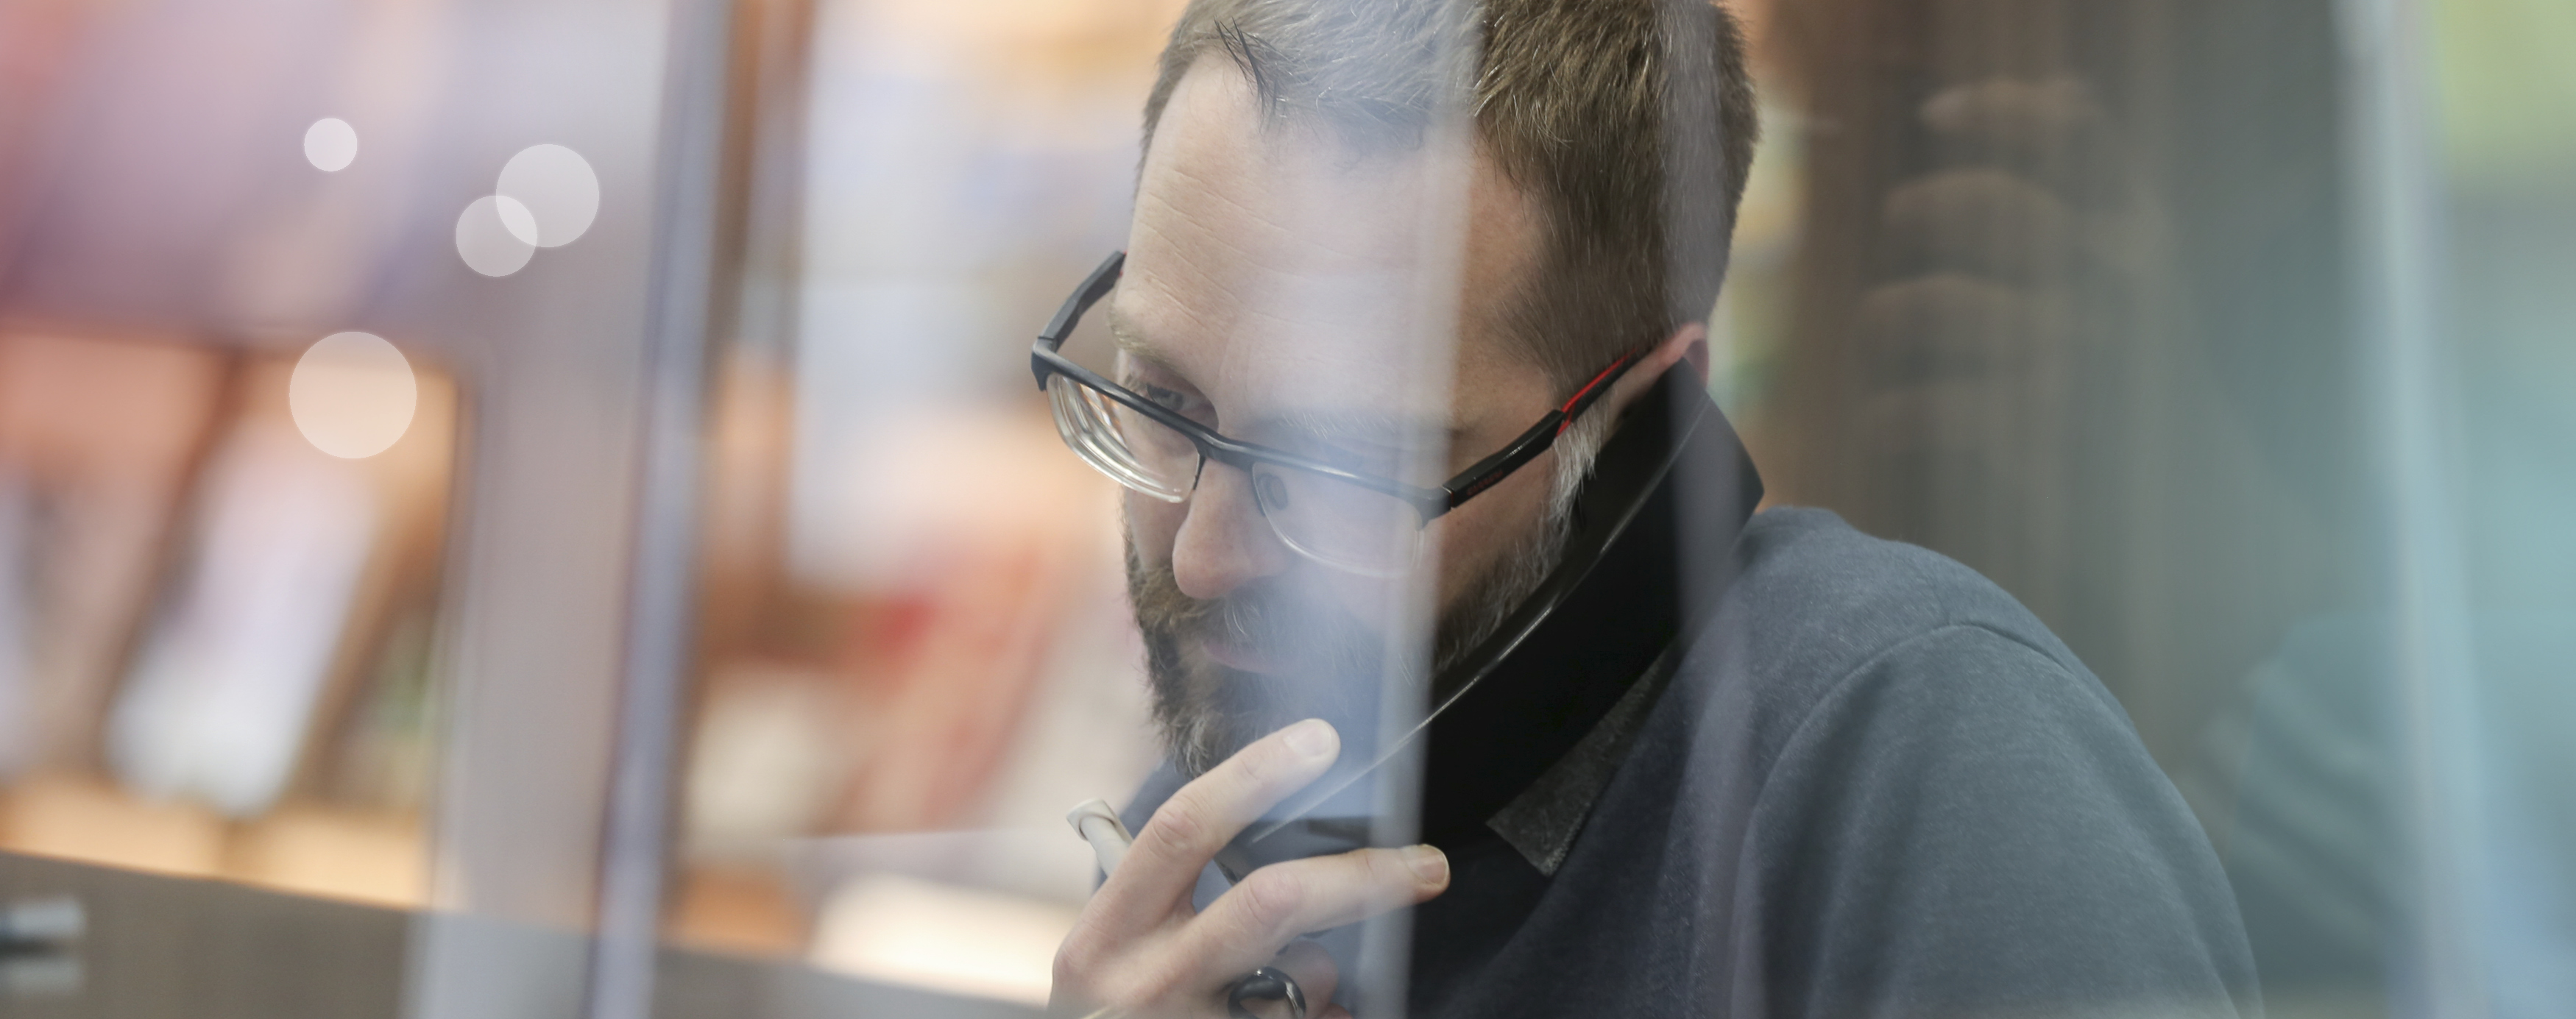 Ein Mitarbeiter der Stadt sitzt hinter einer Glasscheibe und telefoniert konzentriert.